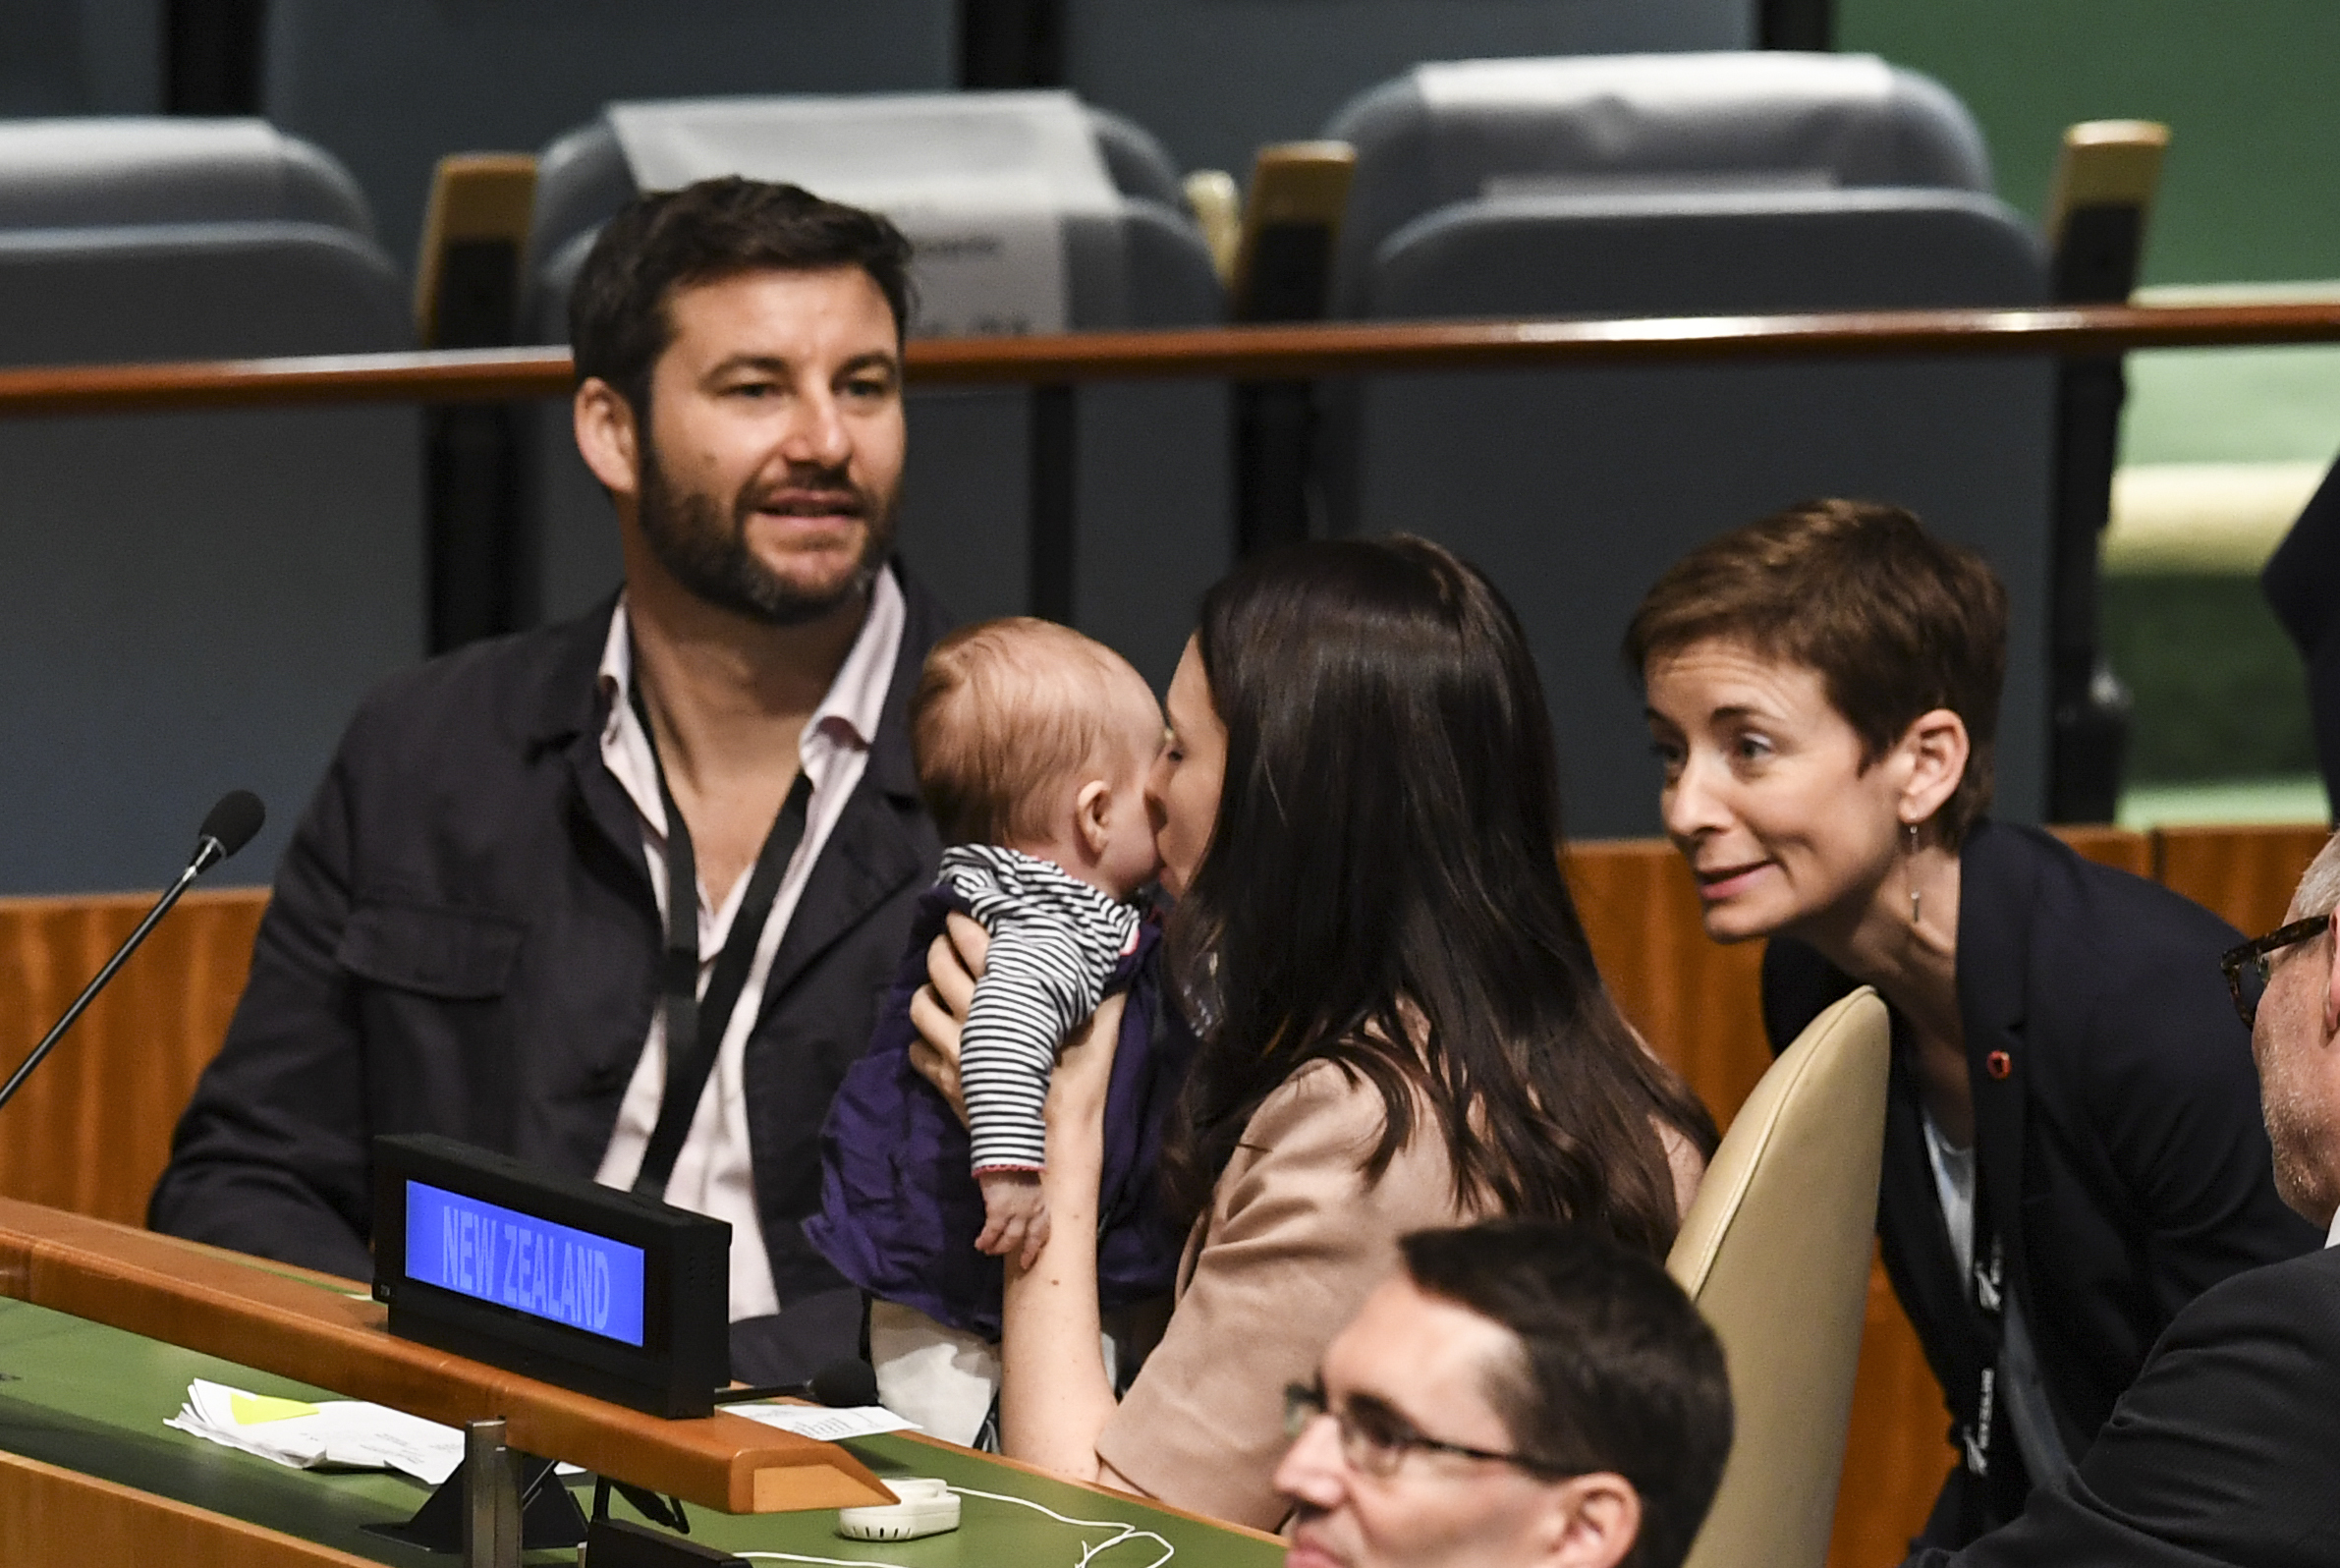 Először vitt magával karonülőt az ENSZ közgyűlésére regnáló kormányfő